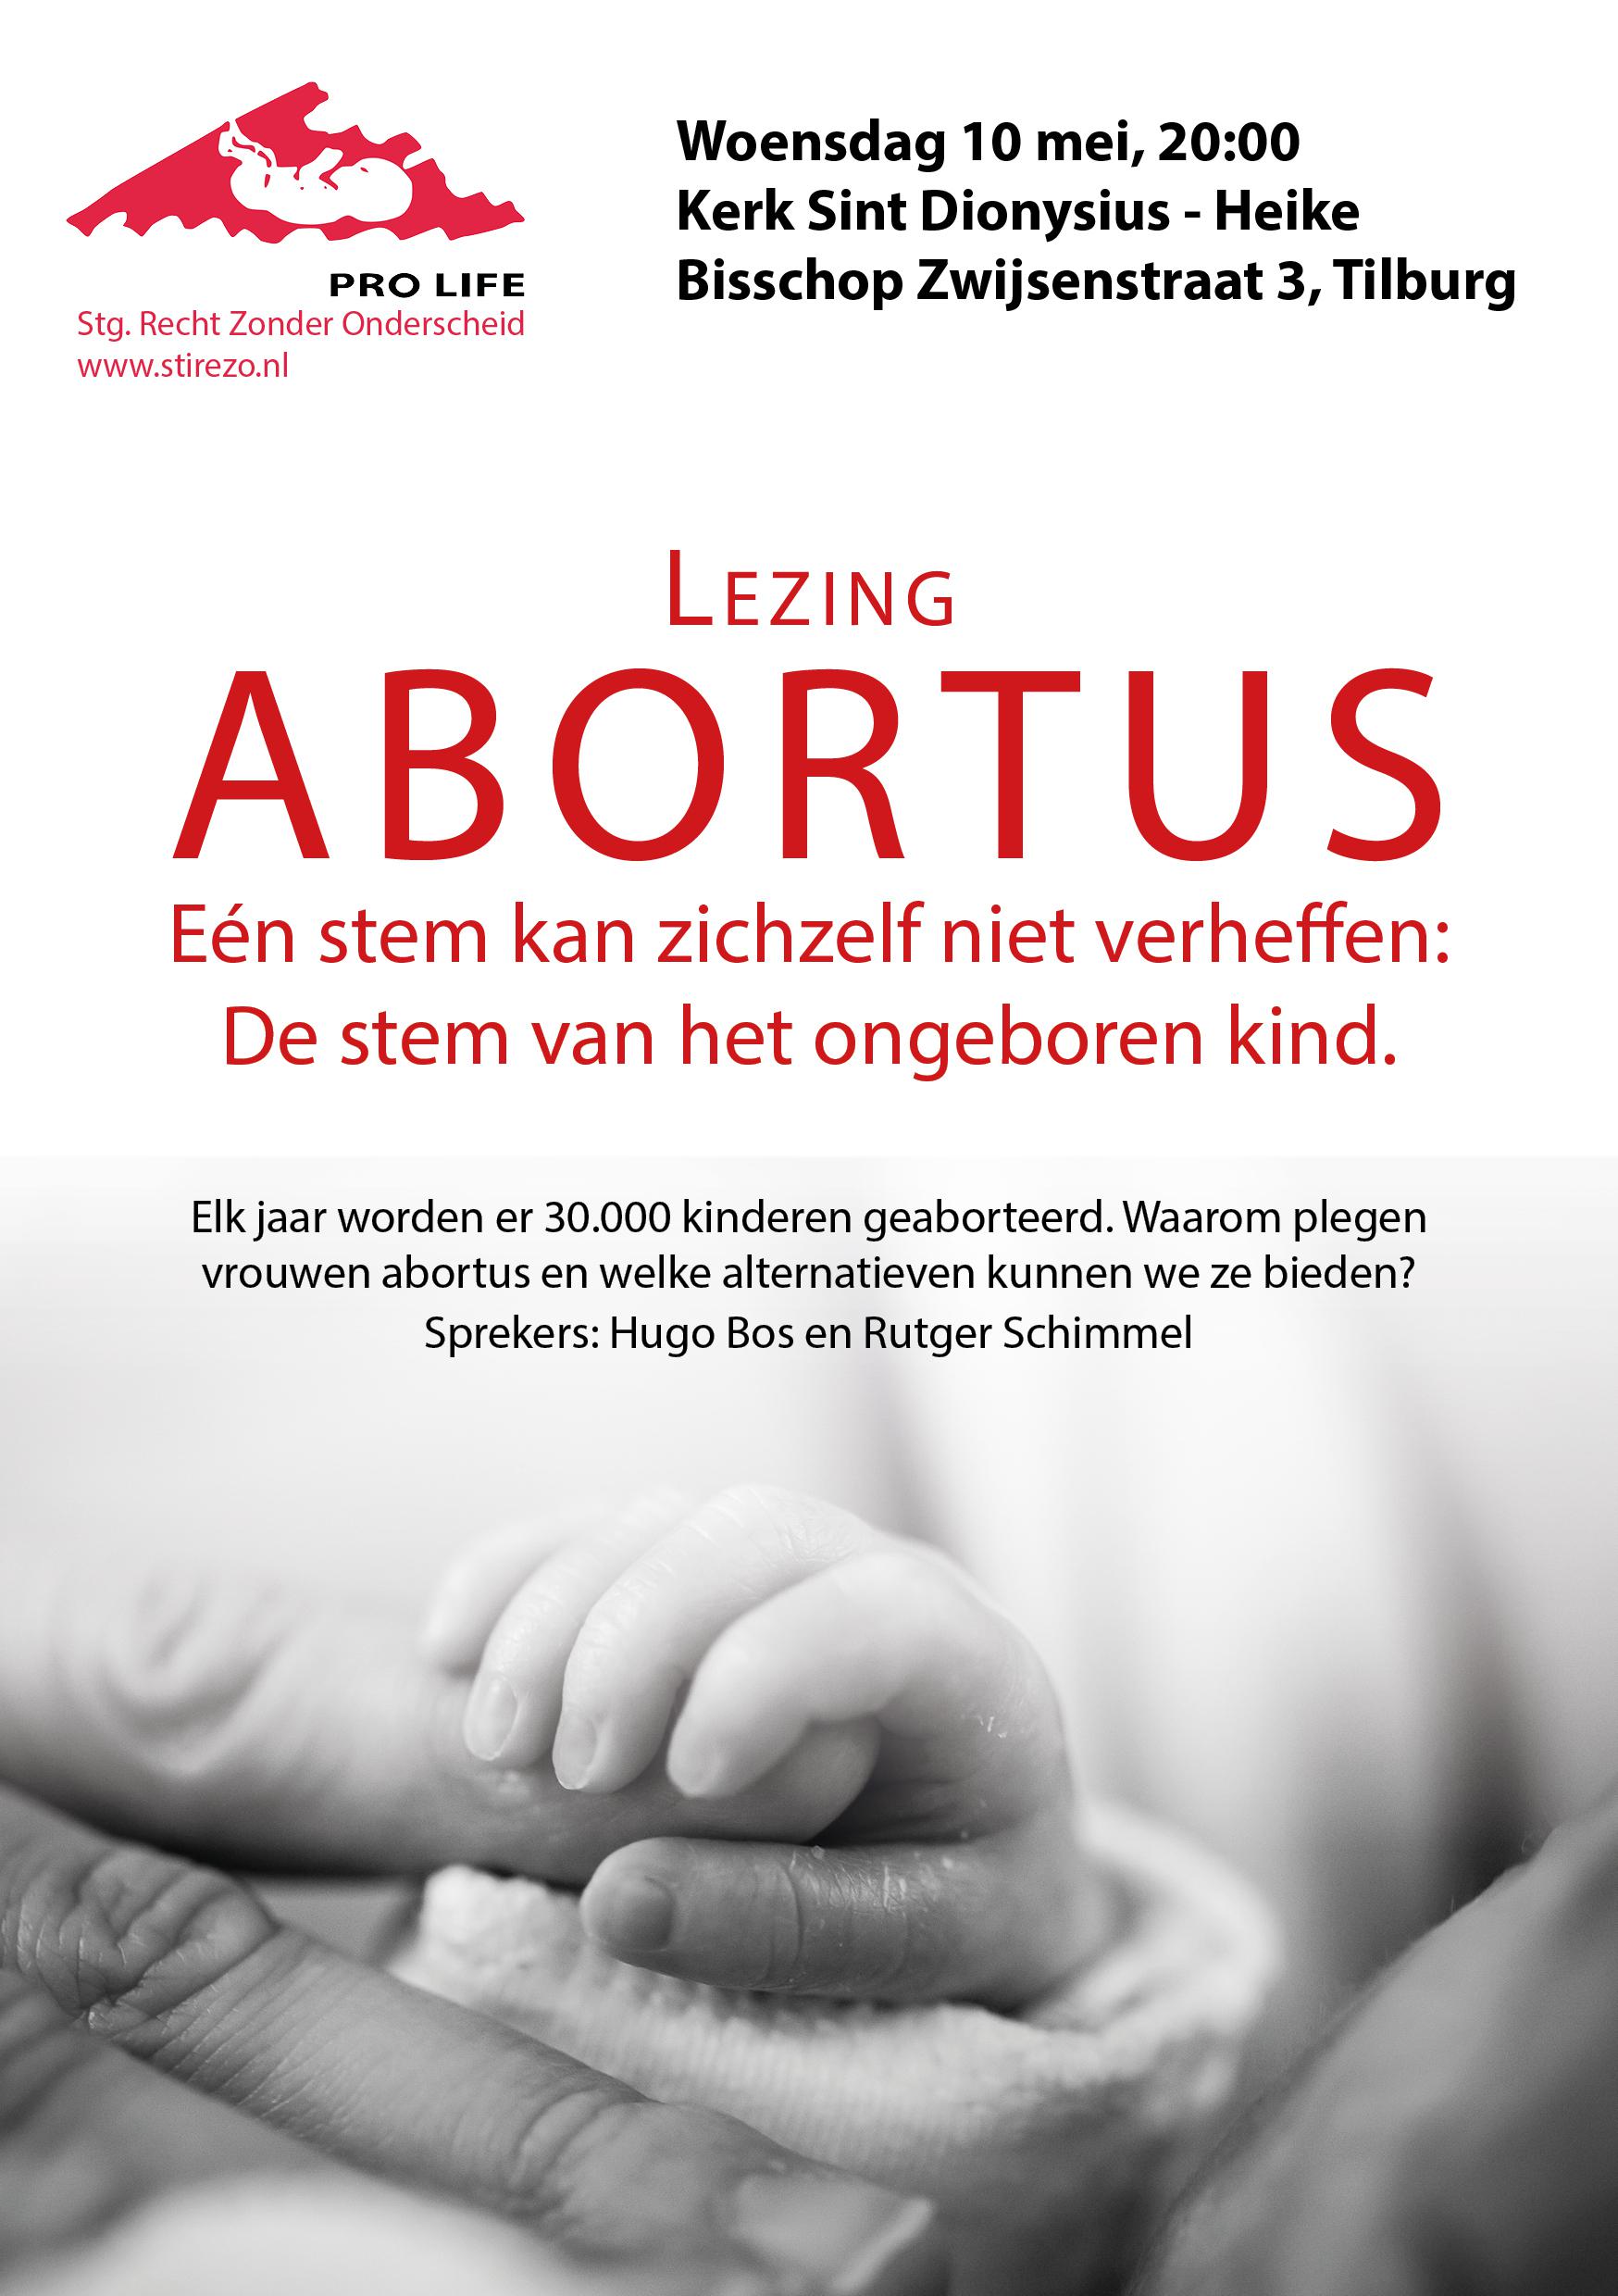 10 mei in Tilburg: Lezing over abortus en alternatieve hulp